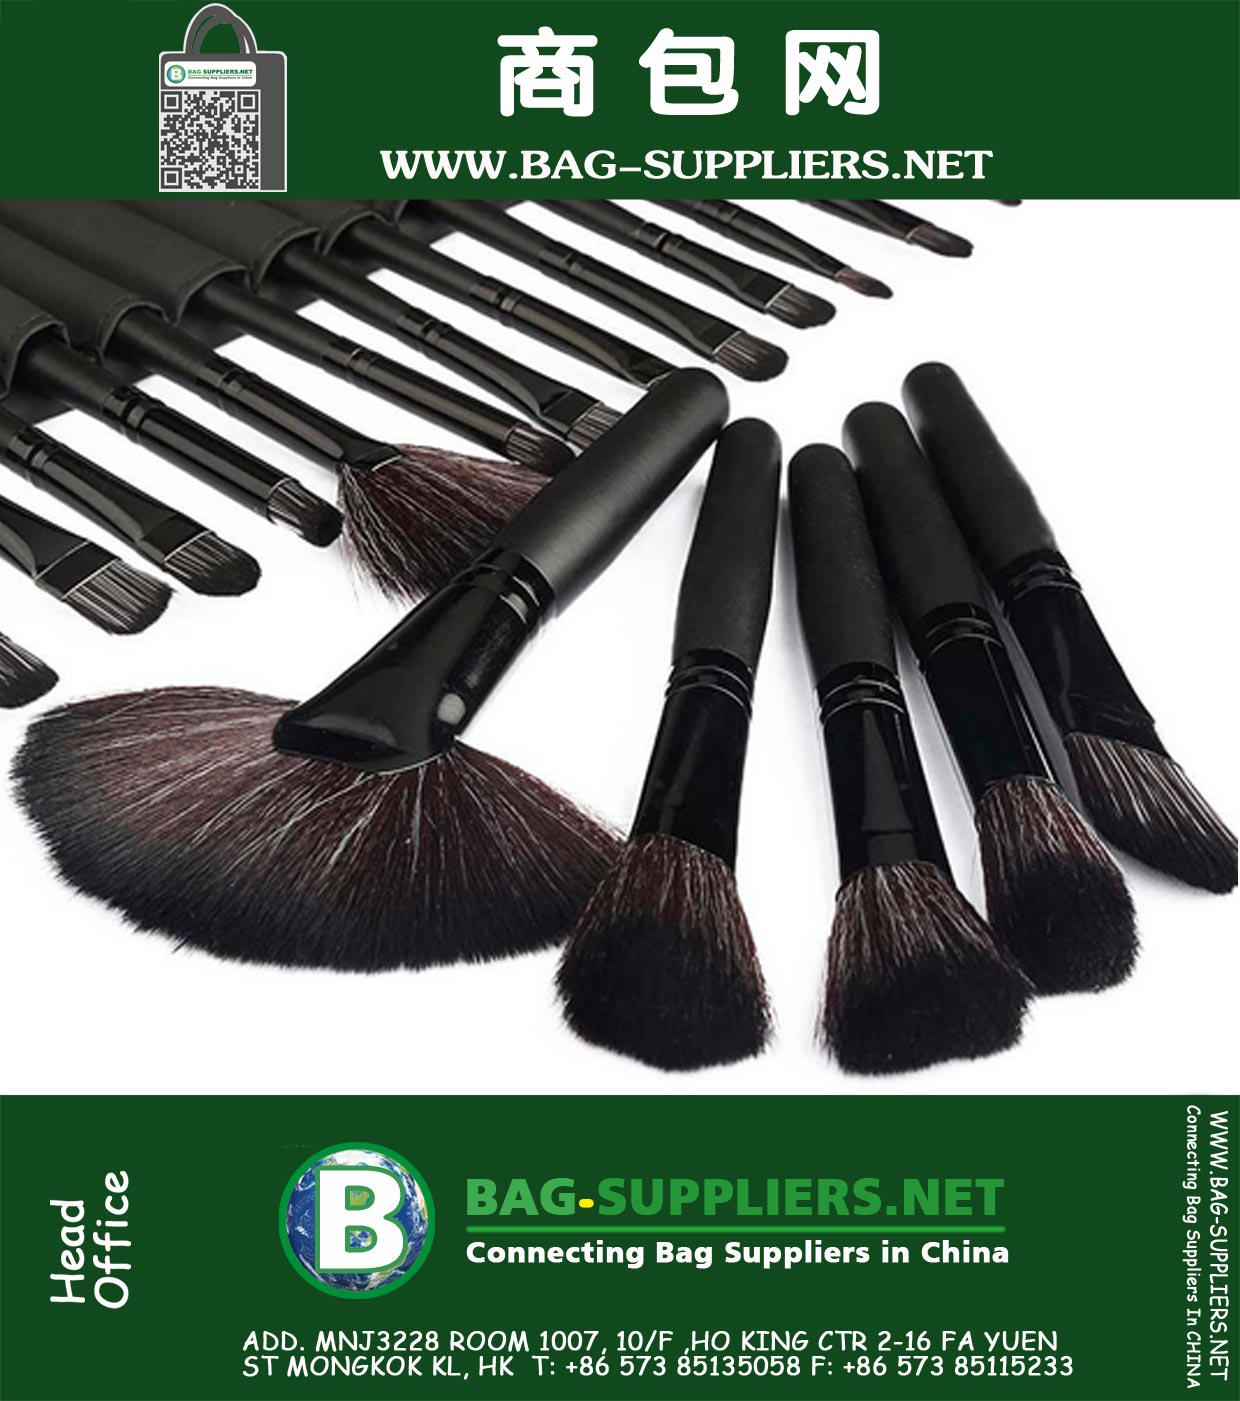 Womans Professional 32 PC bilden Werkzeuge Pincel maquiagem ausgeprägteren Soft Kosmetik Schönheit Make-up-Bürsten-Satz-Kit und Tasche Tasche